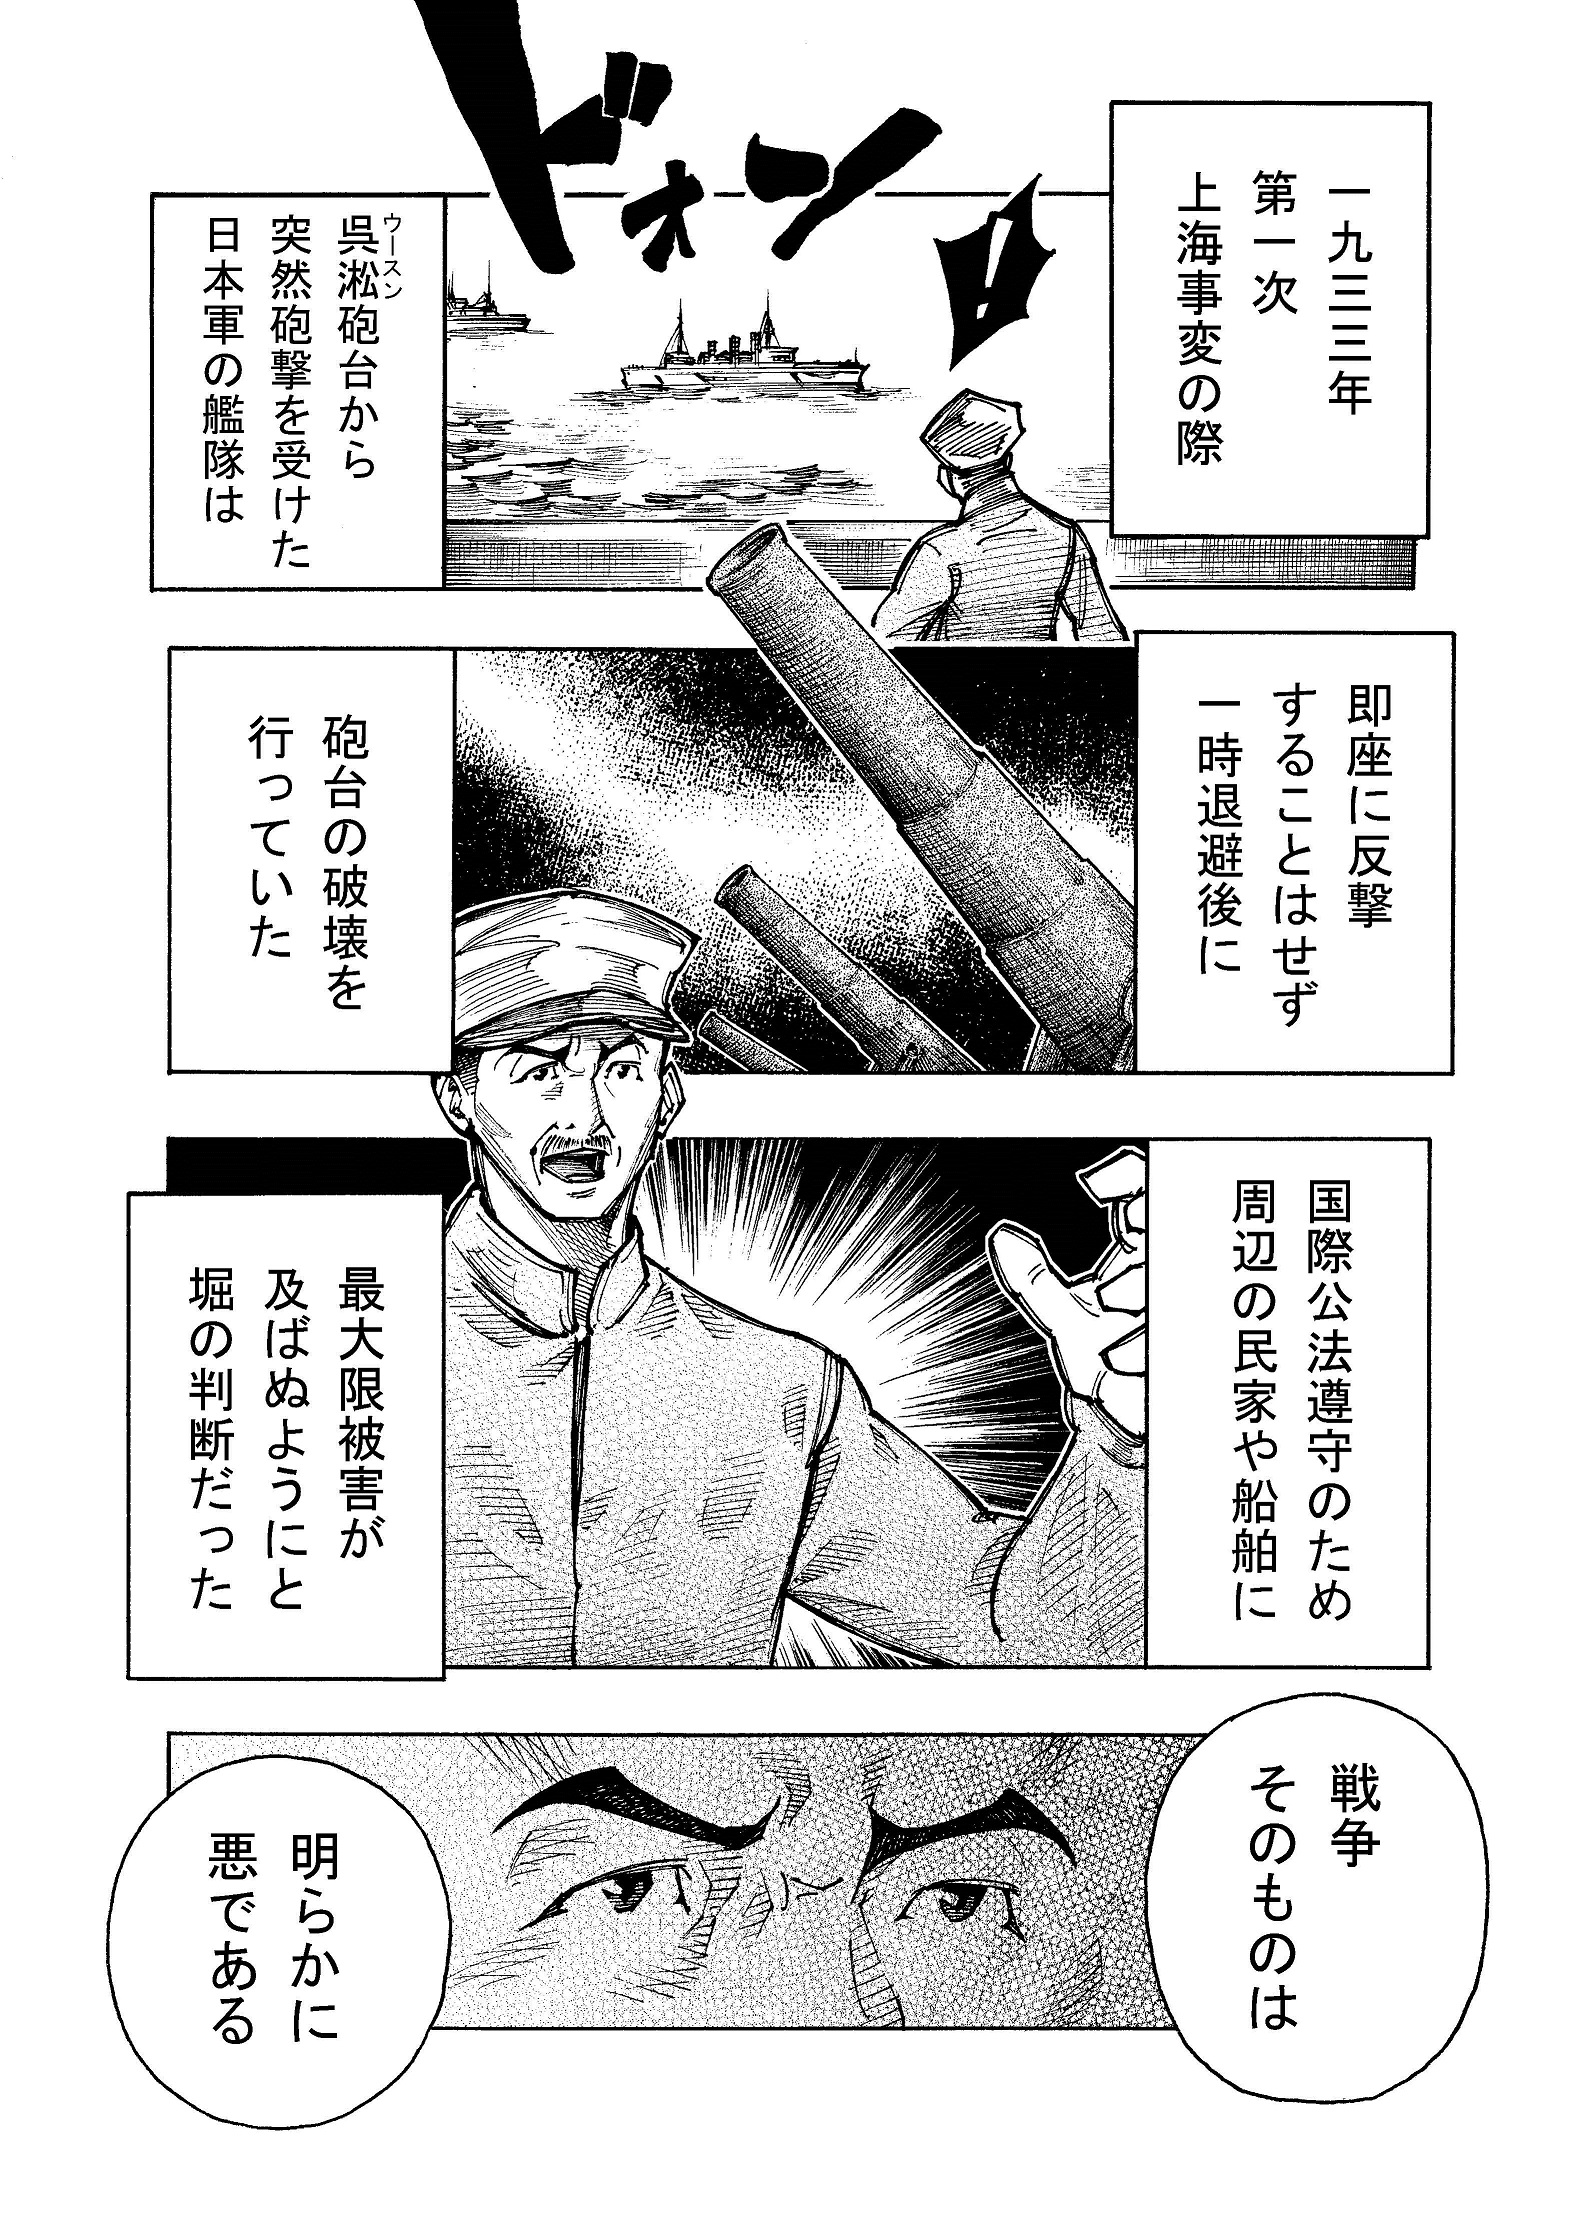 平和主義に徹した秀才海軍中将 堀悌吉 マンガ 九州の偉人 文化ものがたり